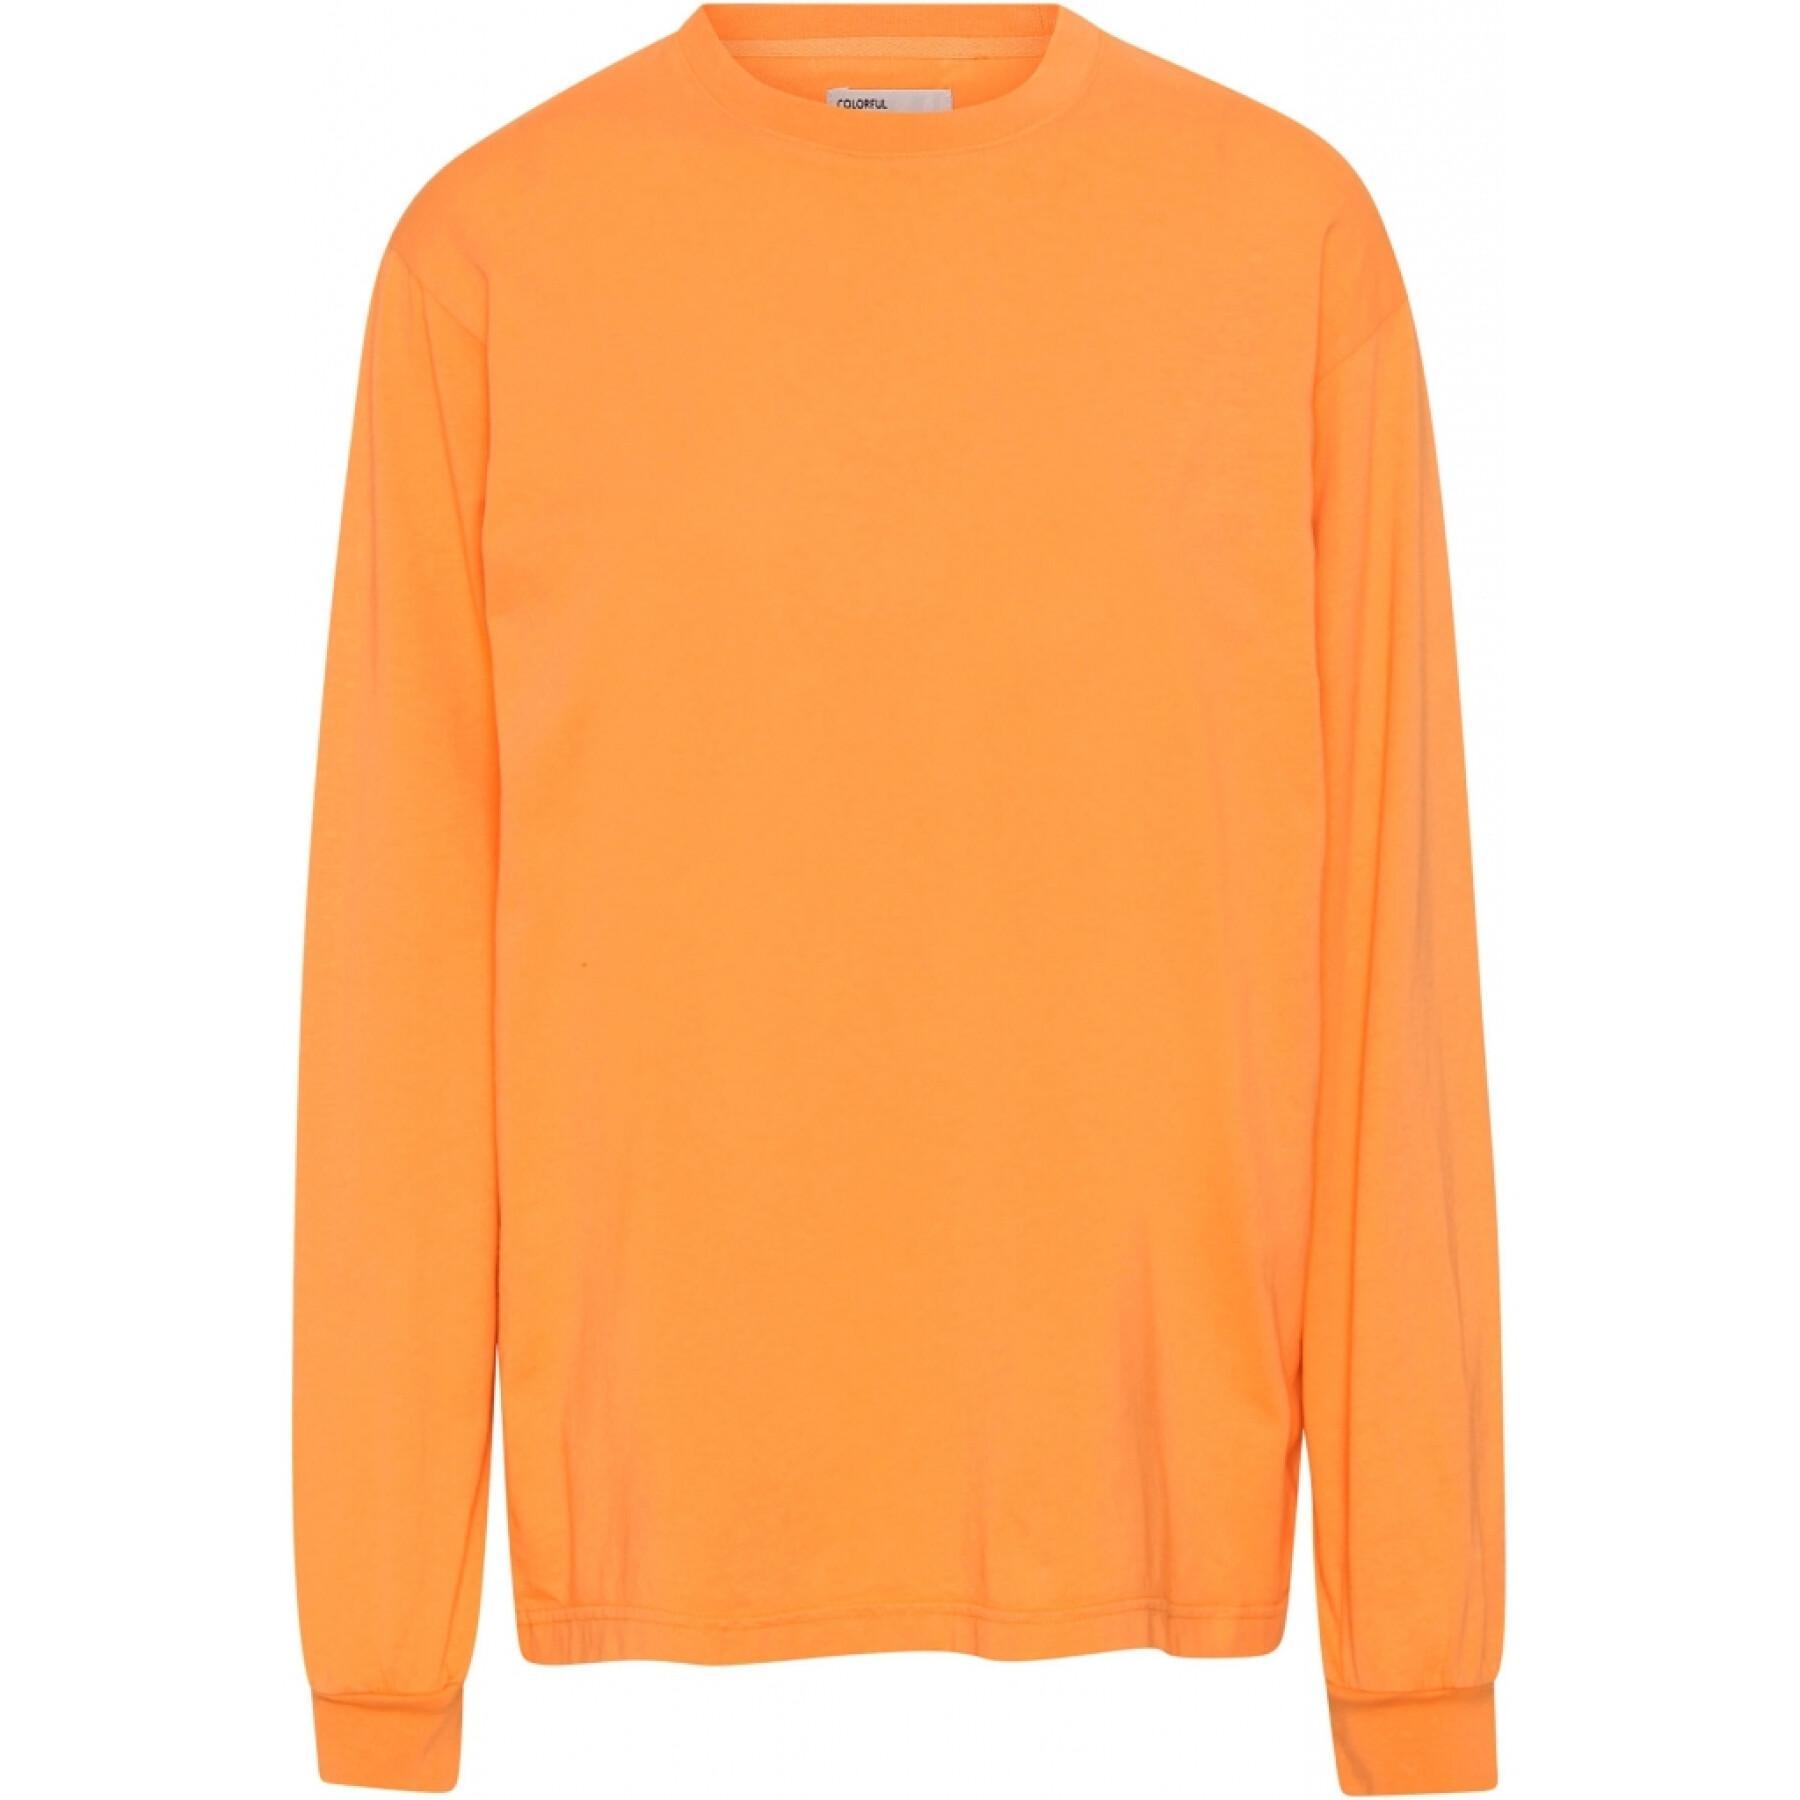 Camiseta de manga larga Colorful Standard Organic oversized sunny orange